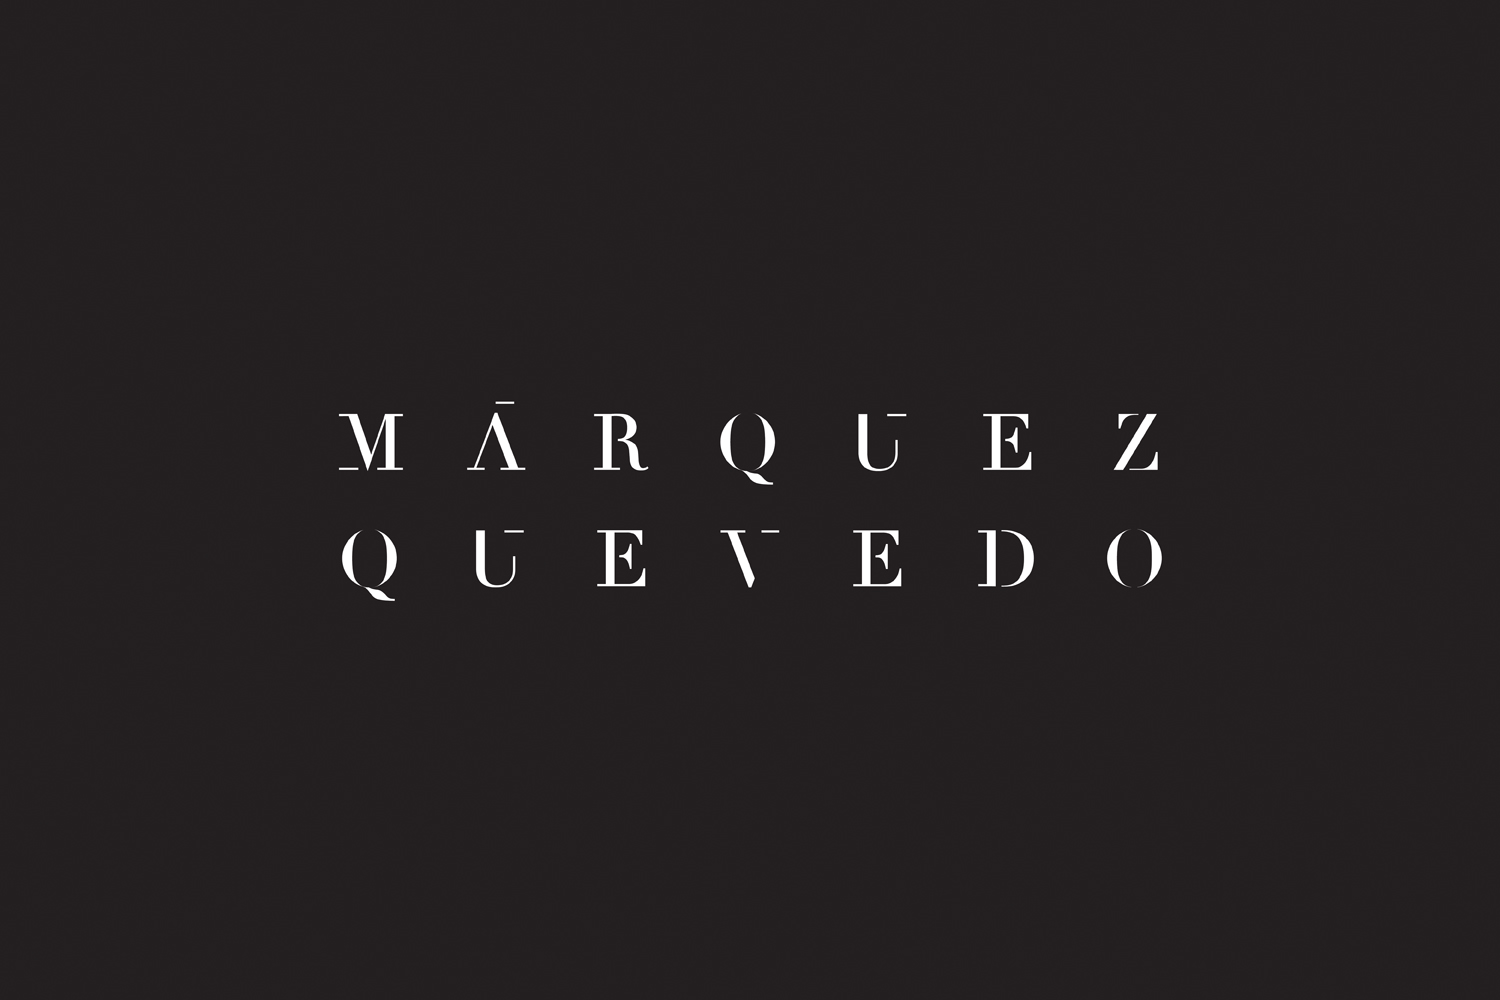 Logotype for Mexican architectural studio Marquez Quevedo by La Tortillería